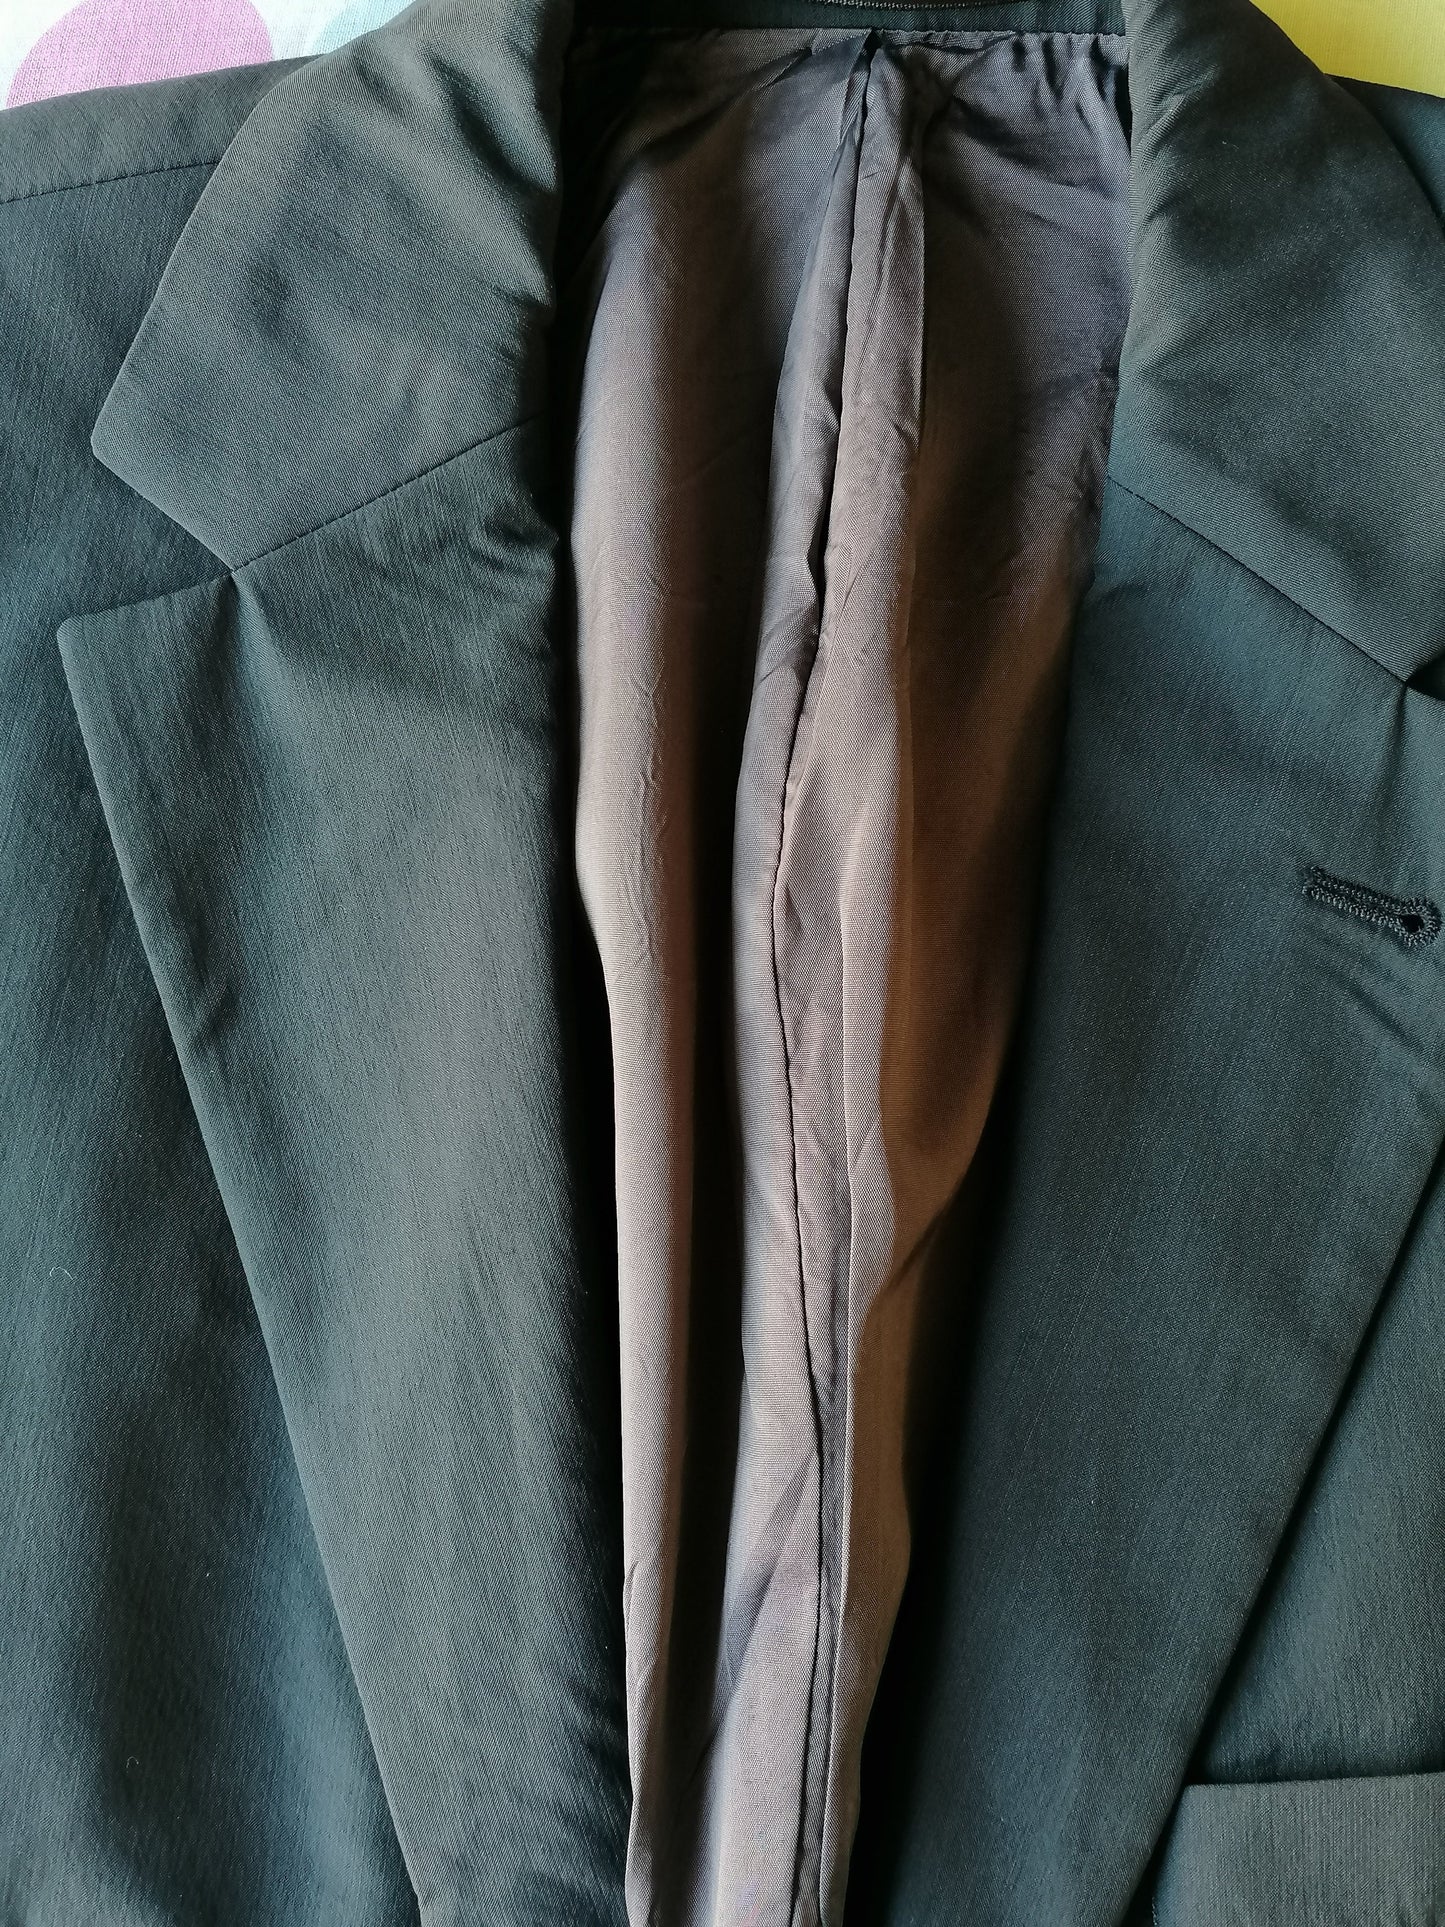 Ventille Vintage Hugo Boss. Coloré vert foncé, glacé léger. Taille 50 / M. Stretch